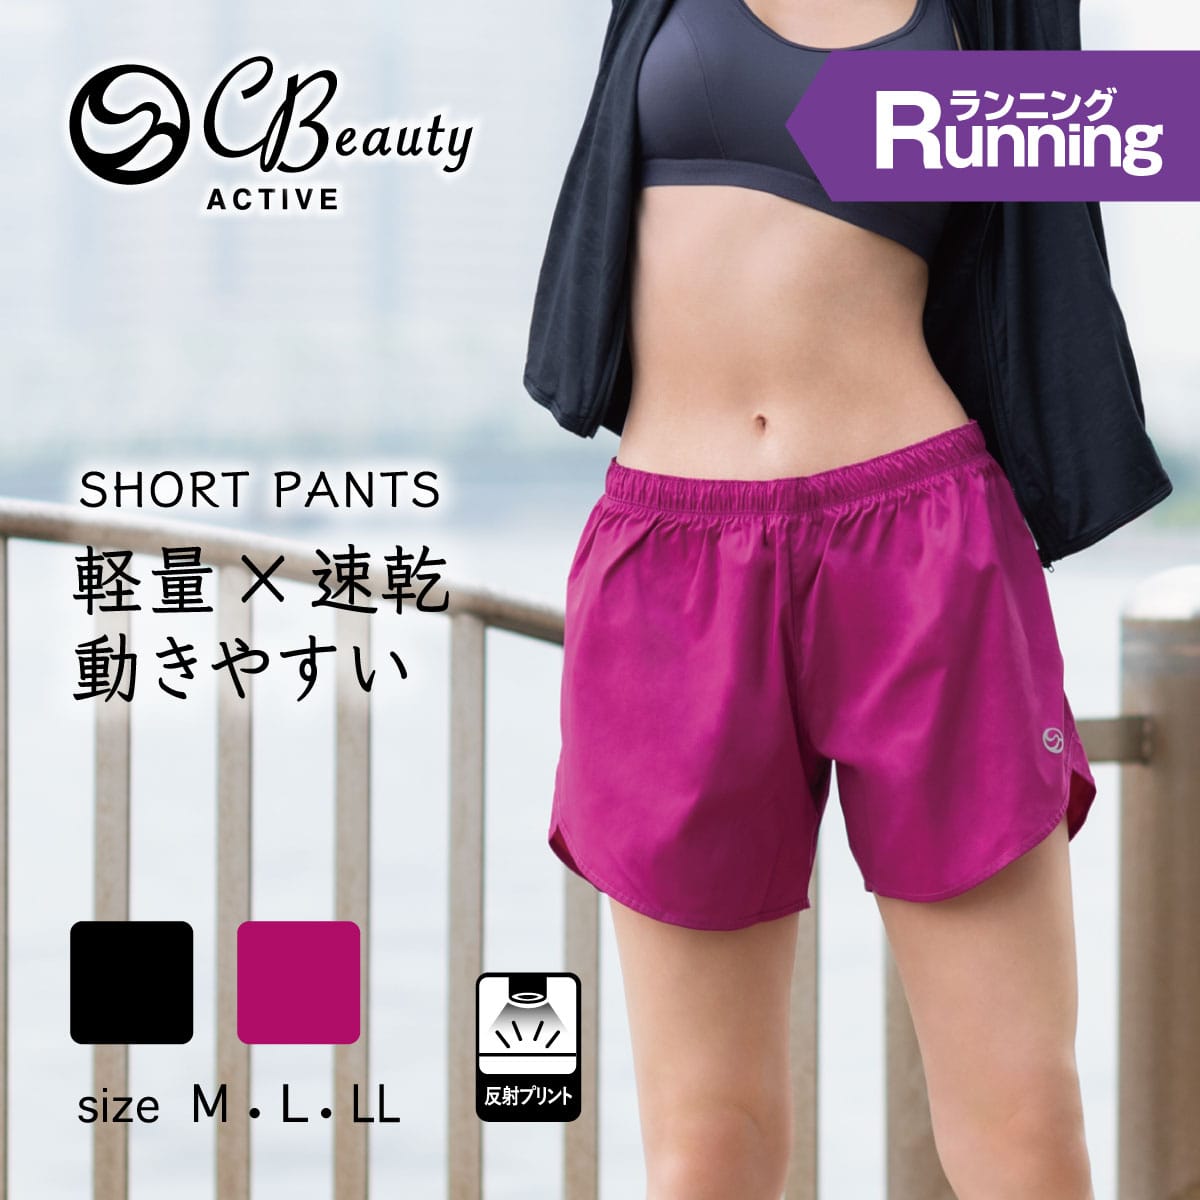 公式) Clear Beauty Active クリアビューティ アクティブ 【ランニング】ジョギング ショートパンツ  ATSUGI（アツギ）公式直販